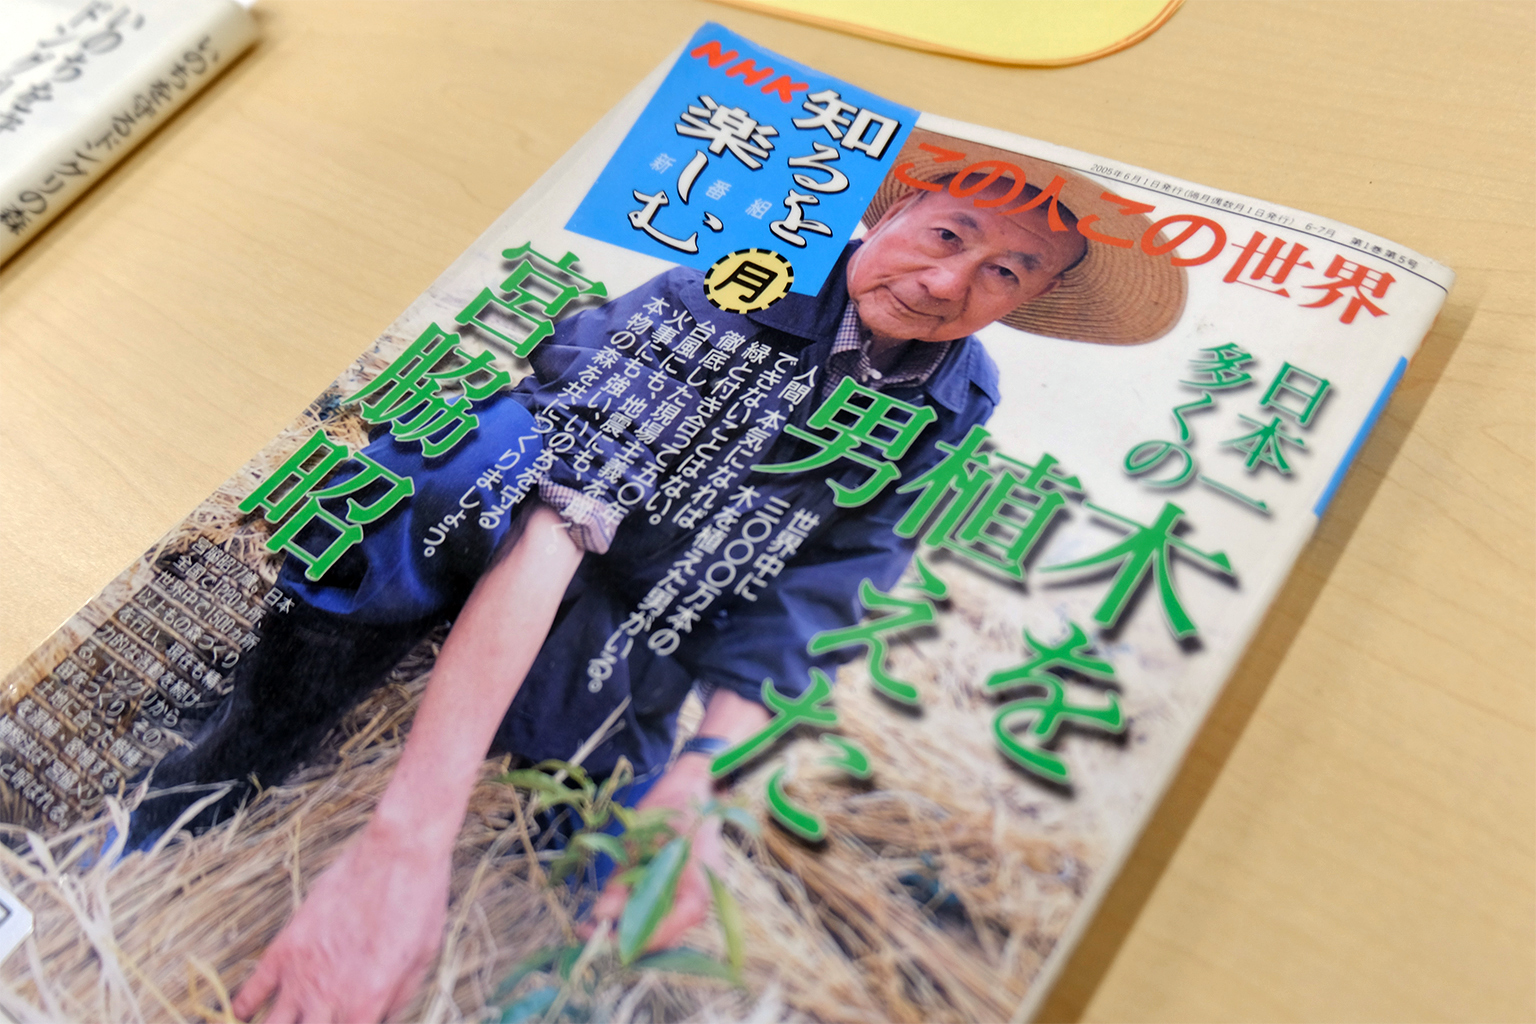 A magazine featuring Akira Miyawaki.